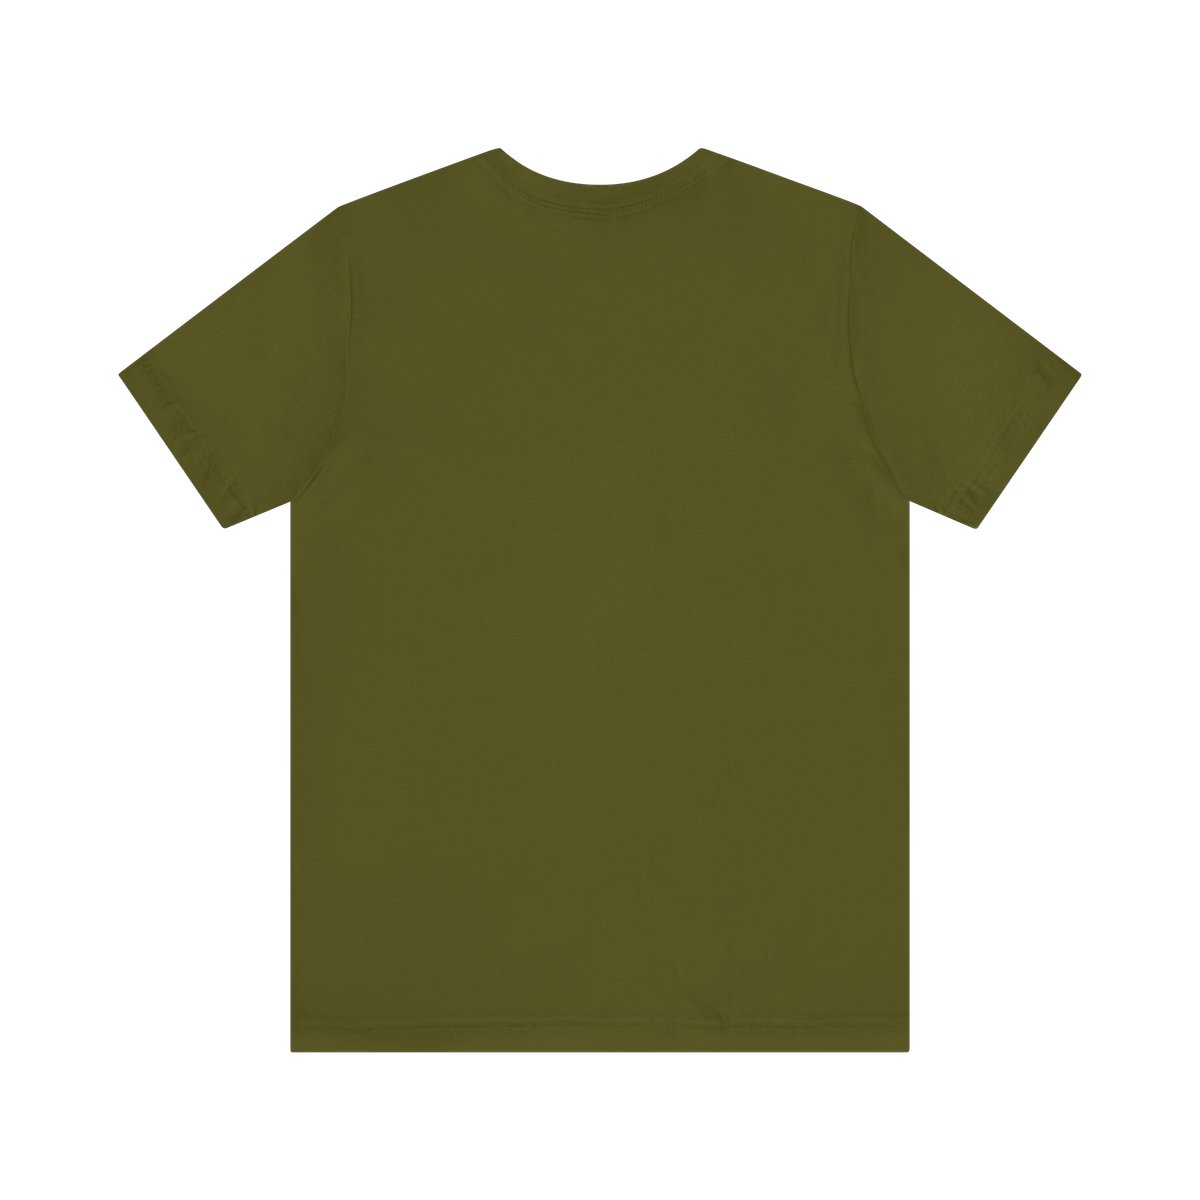 Ok Bloomer Short Sleeve Unisex T-Shirt product thumbnail image